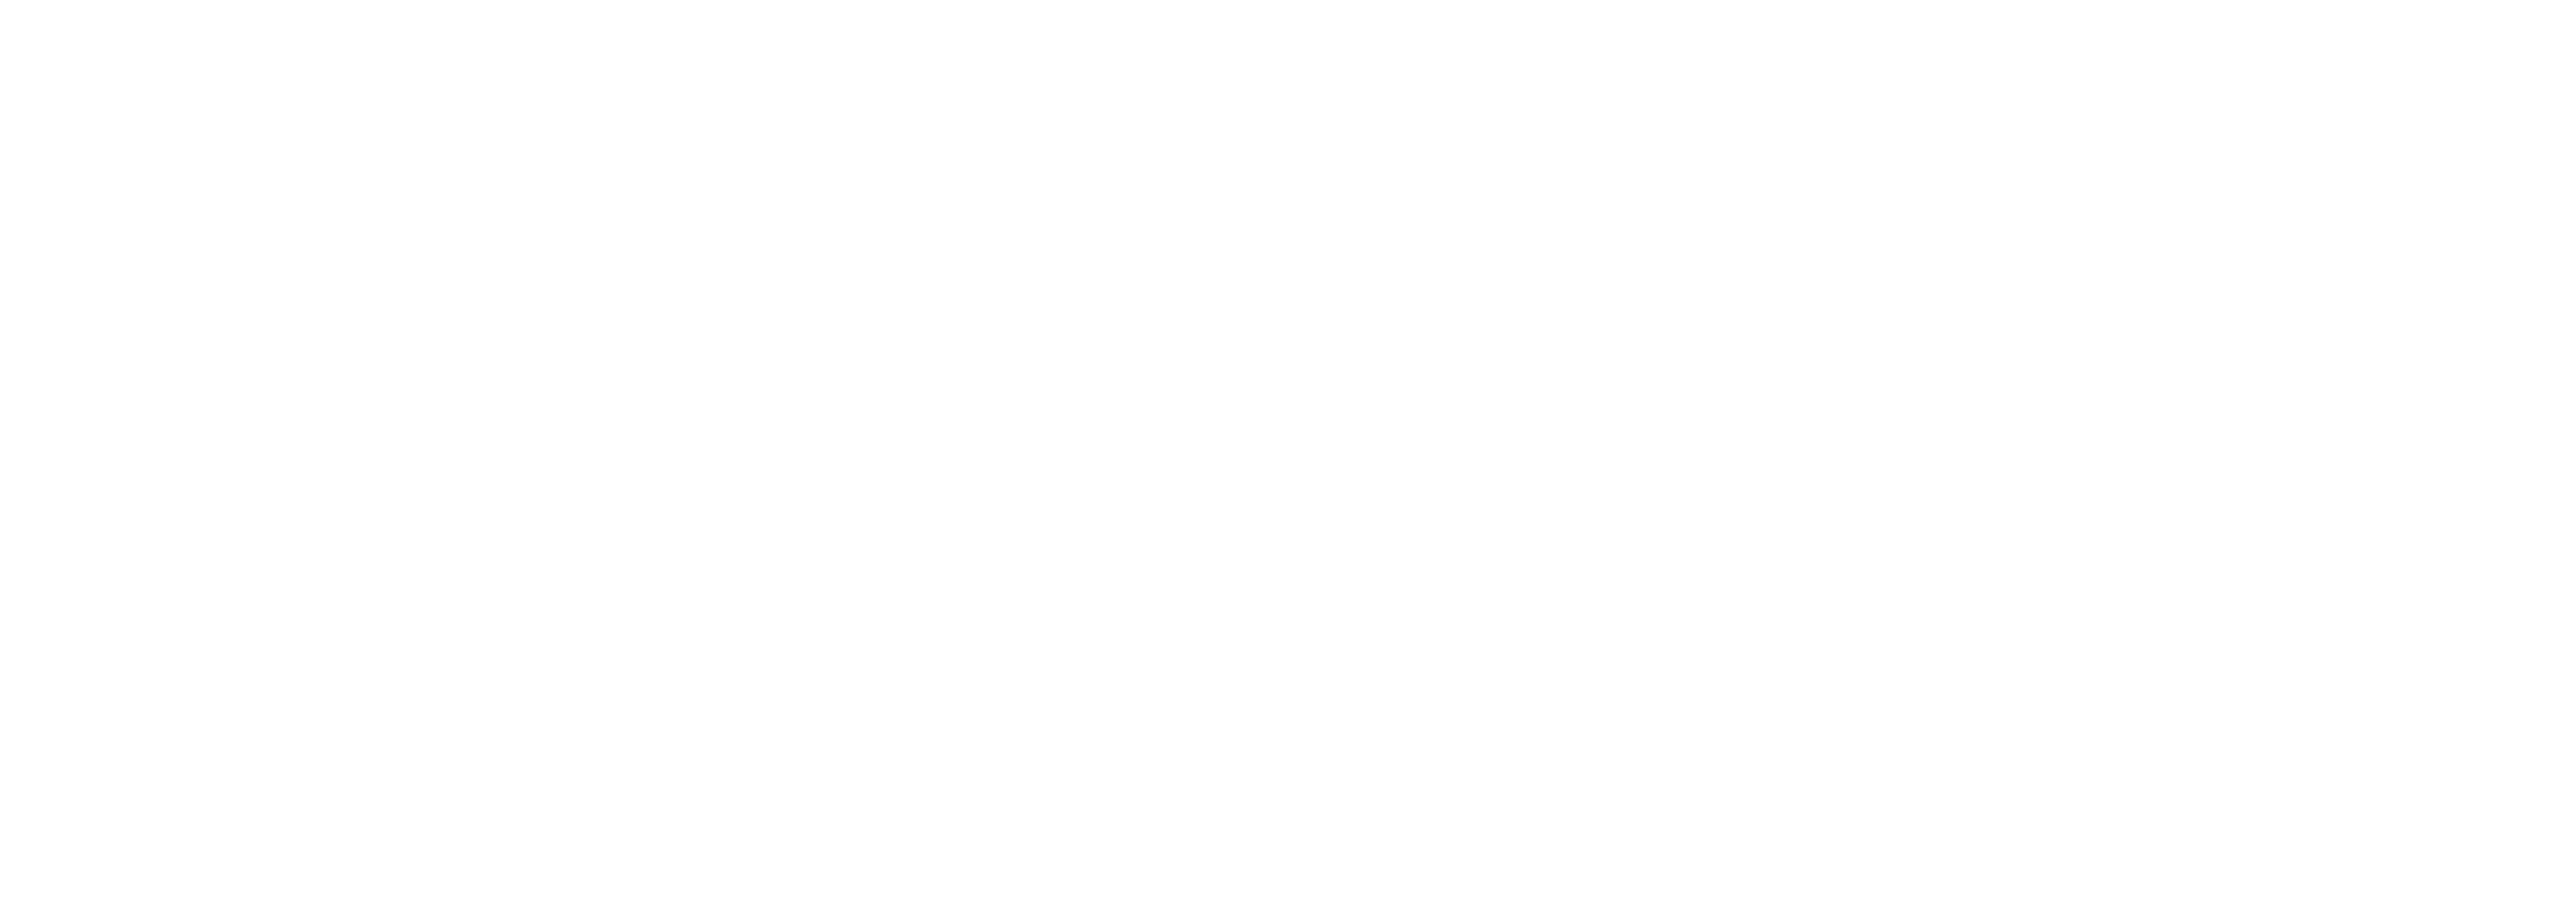 Uber_logo_2018